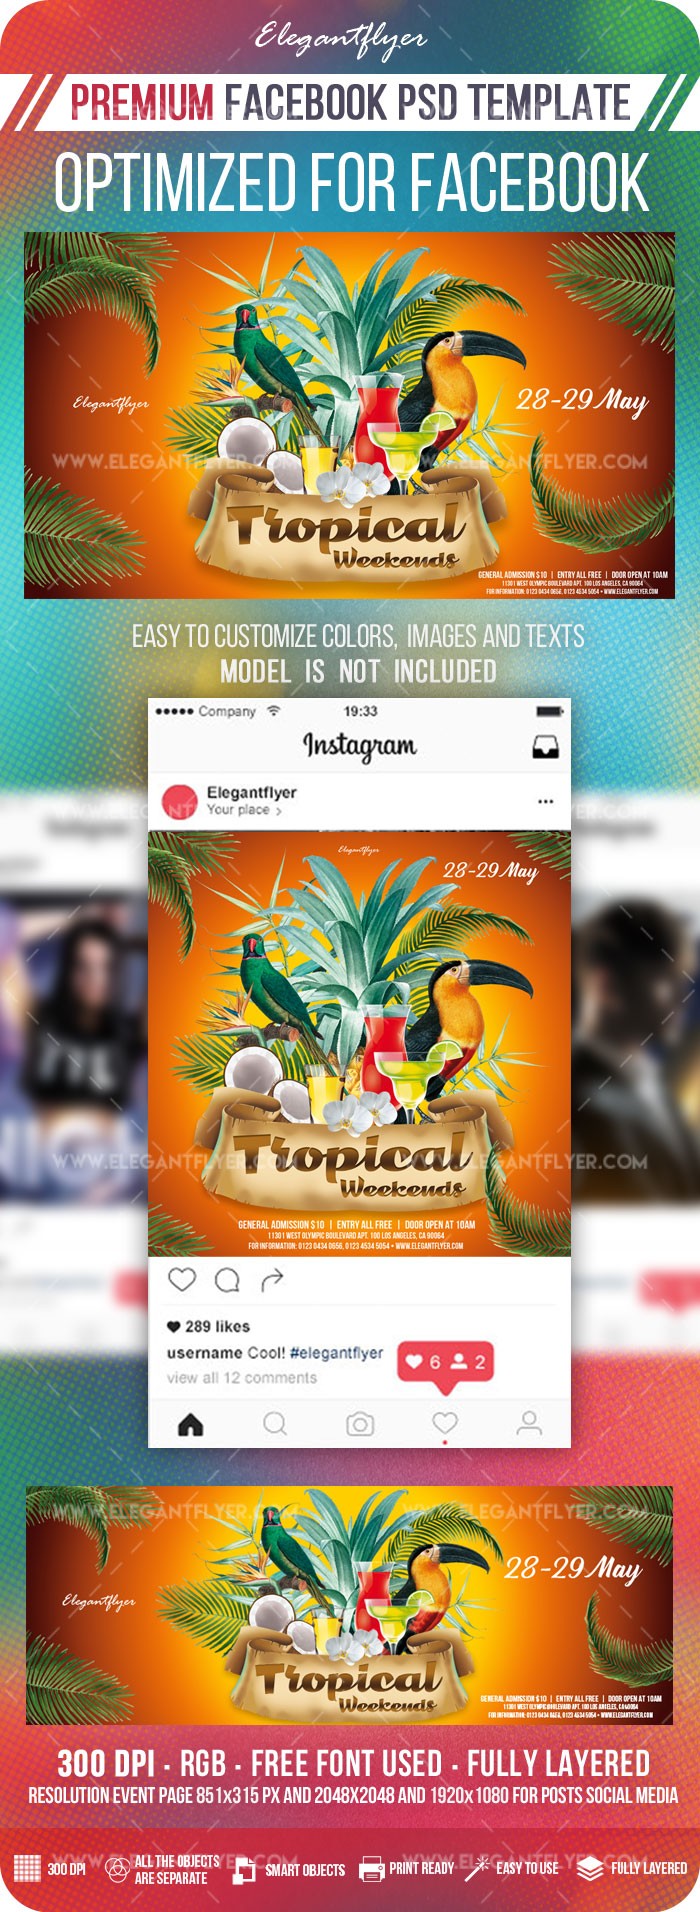 Tropical Weekends Facebook by ElegantFlyer